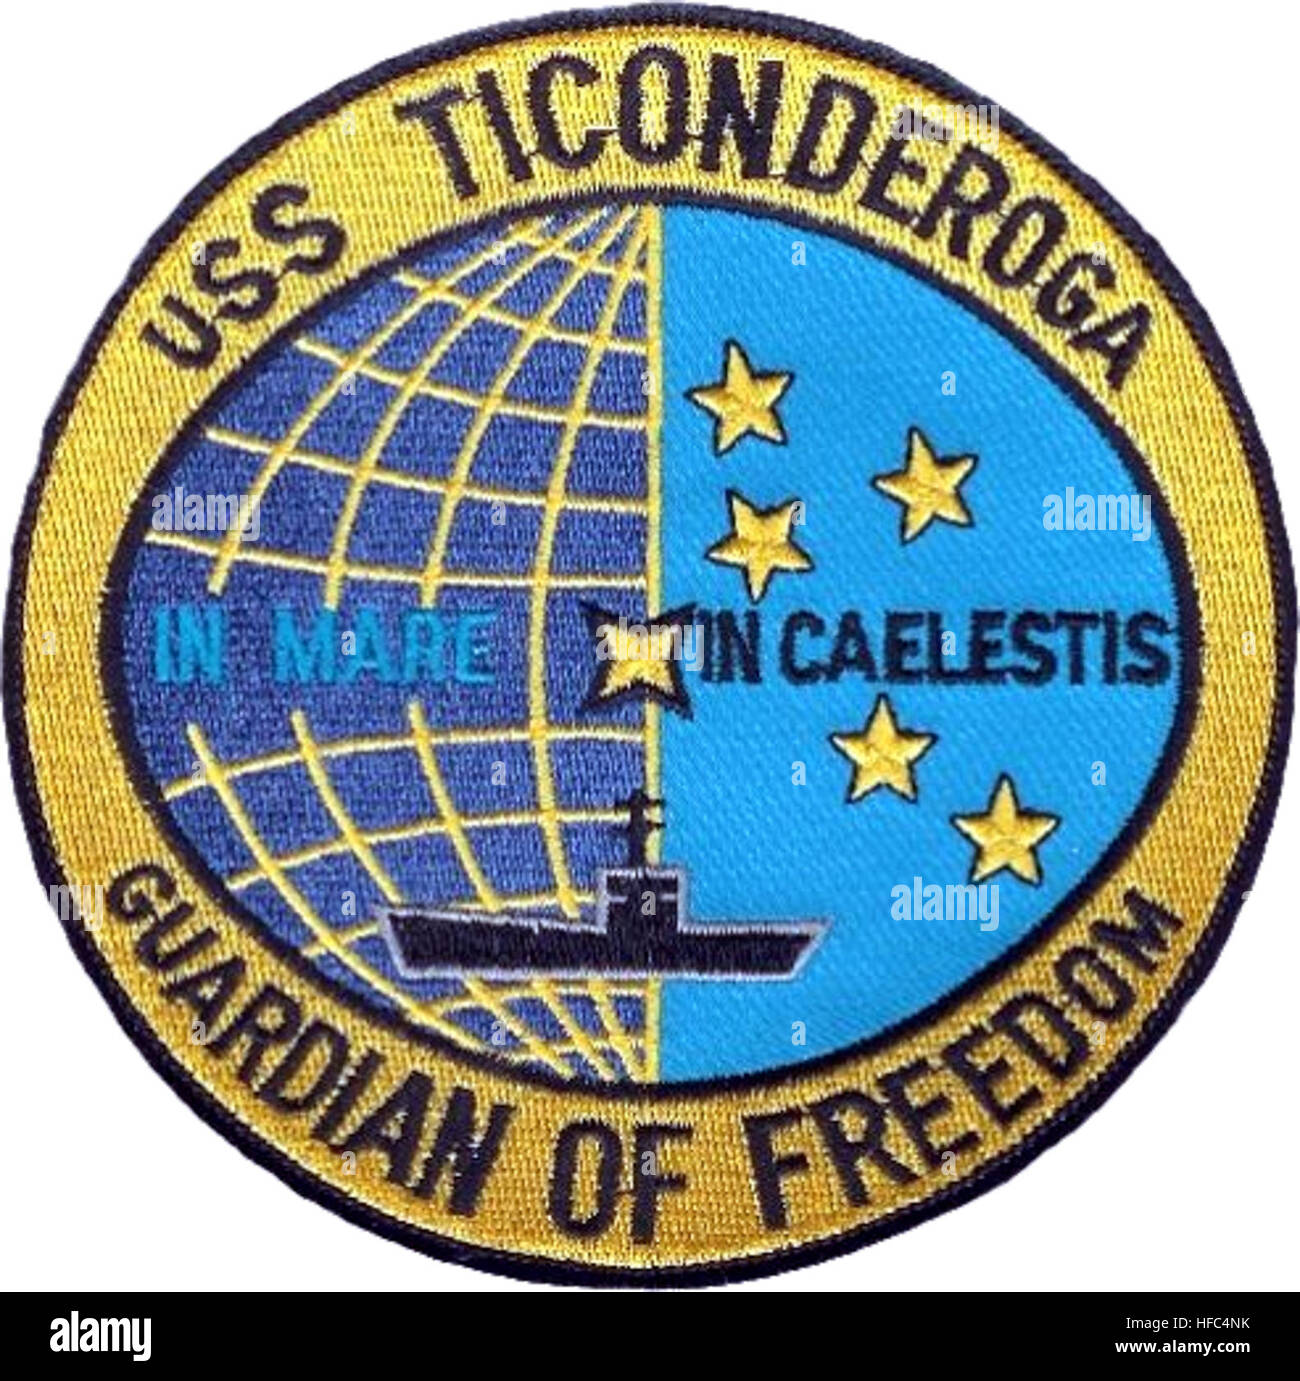 Inisgnia of USS Ticonderoga (CVA-14) 1968 Stock Photo